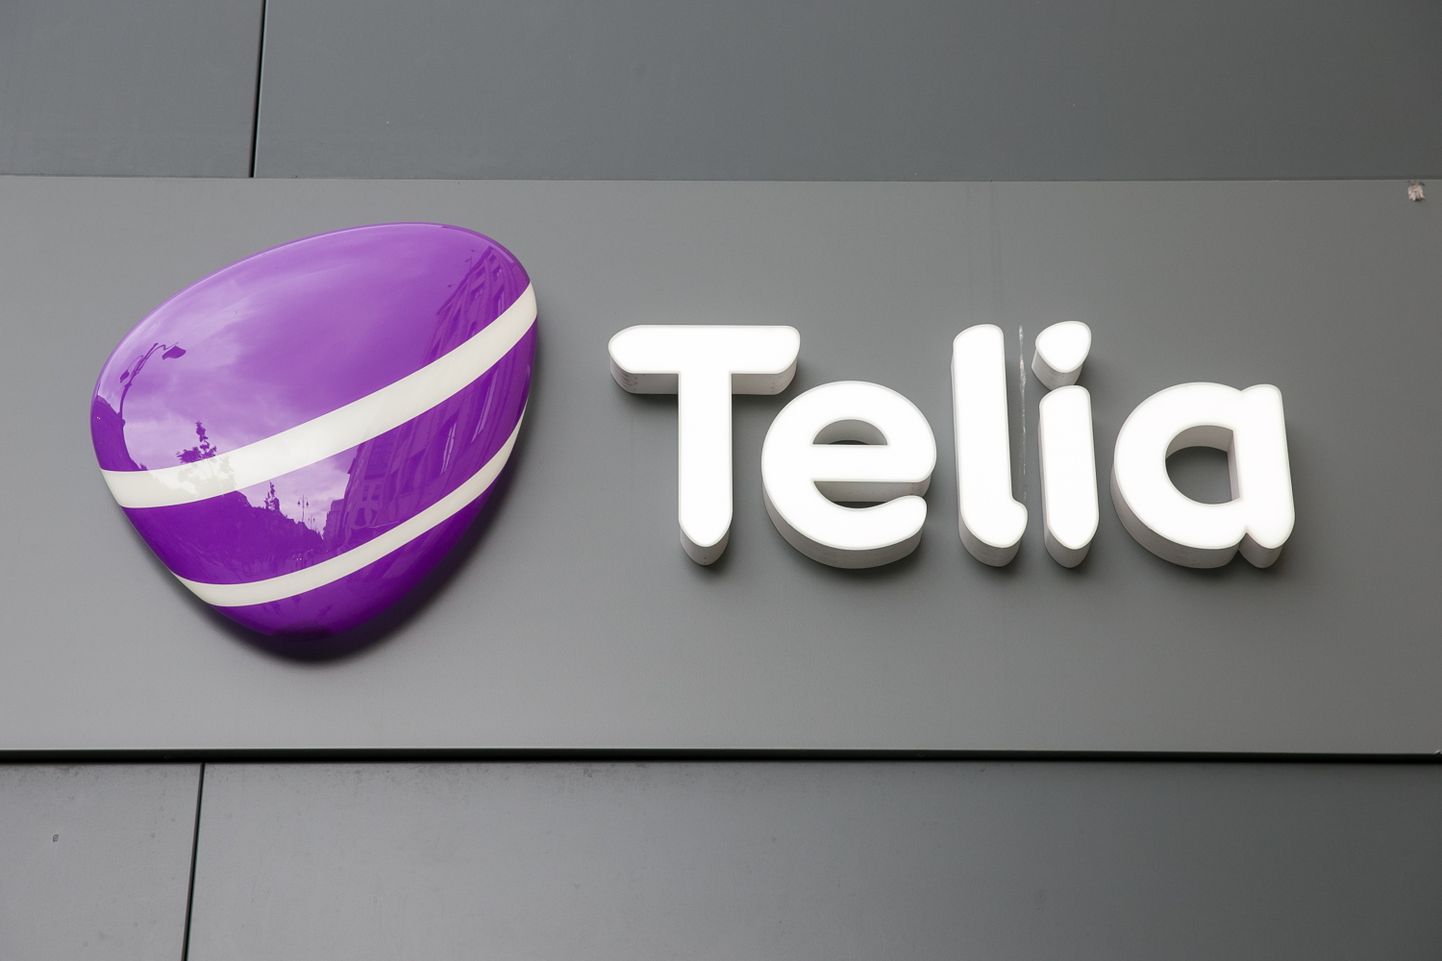 Логотип Telia. Иллюстративное фото.